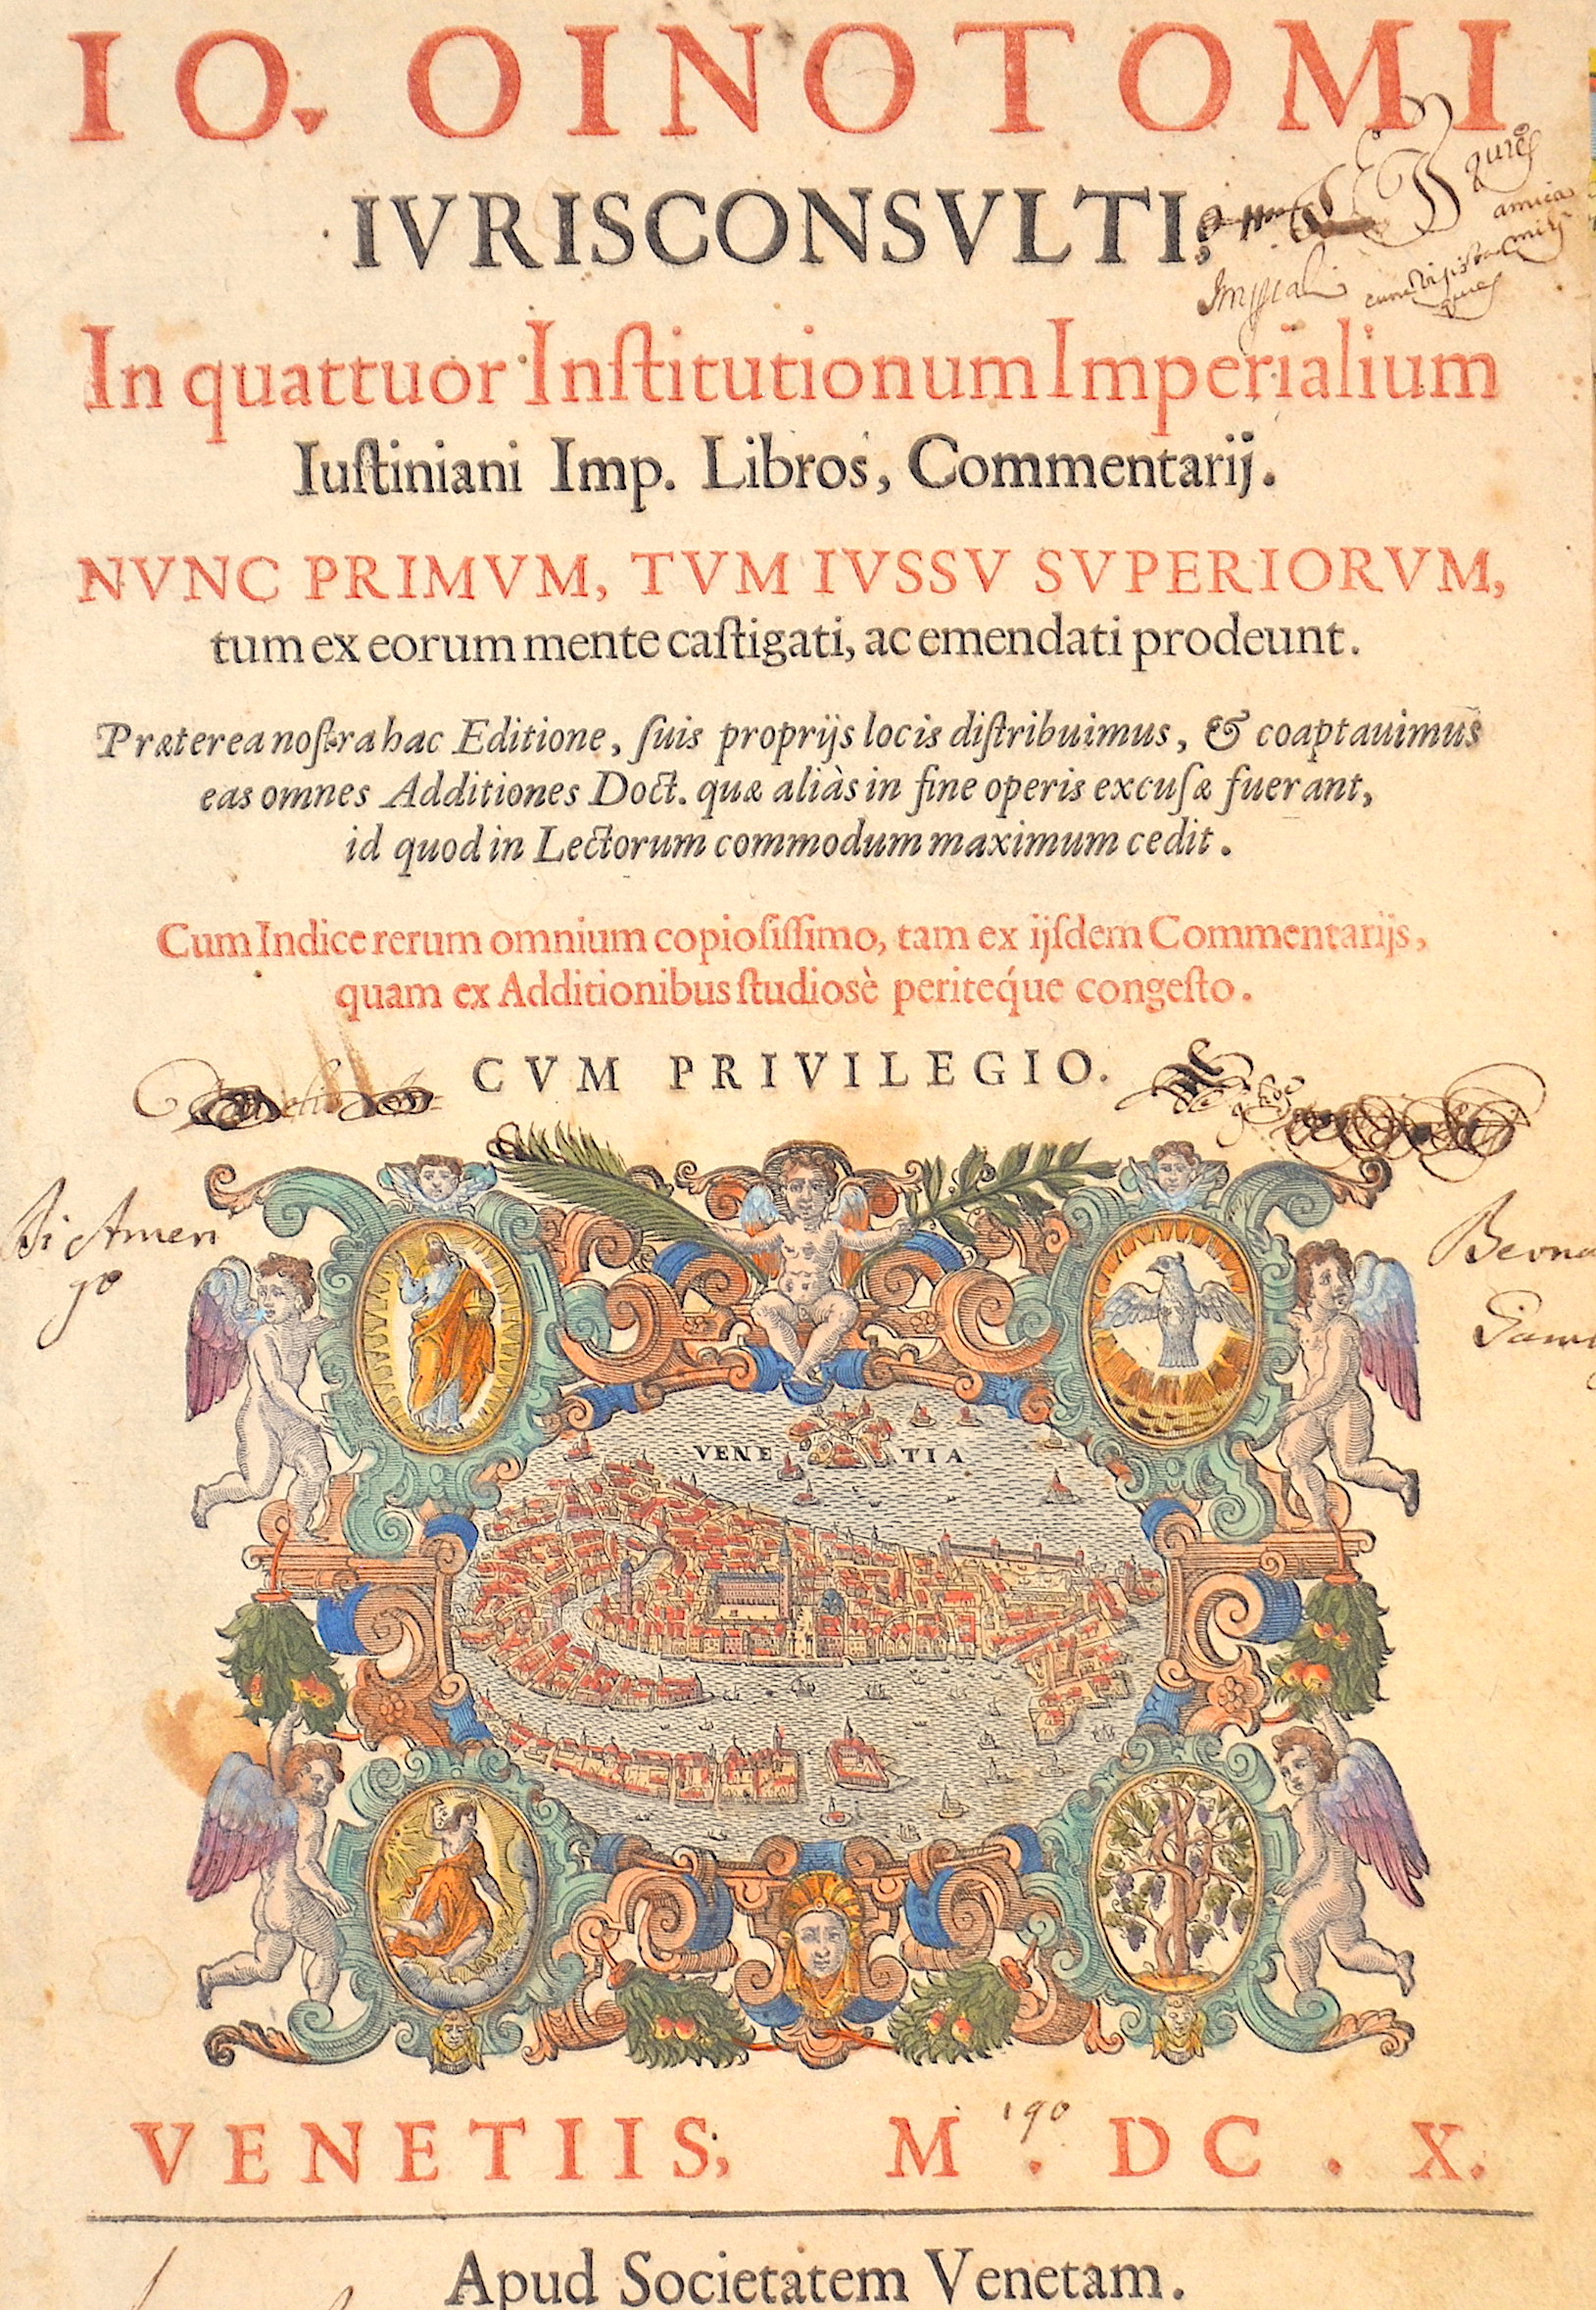 Schneidewein  Io. Oinotomi iurisconsulti n quattuor, Institutionum Imperialium Iustiniani Imp. Libros, Commentarij.